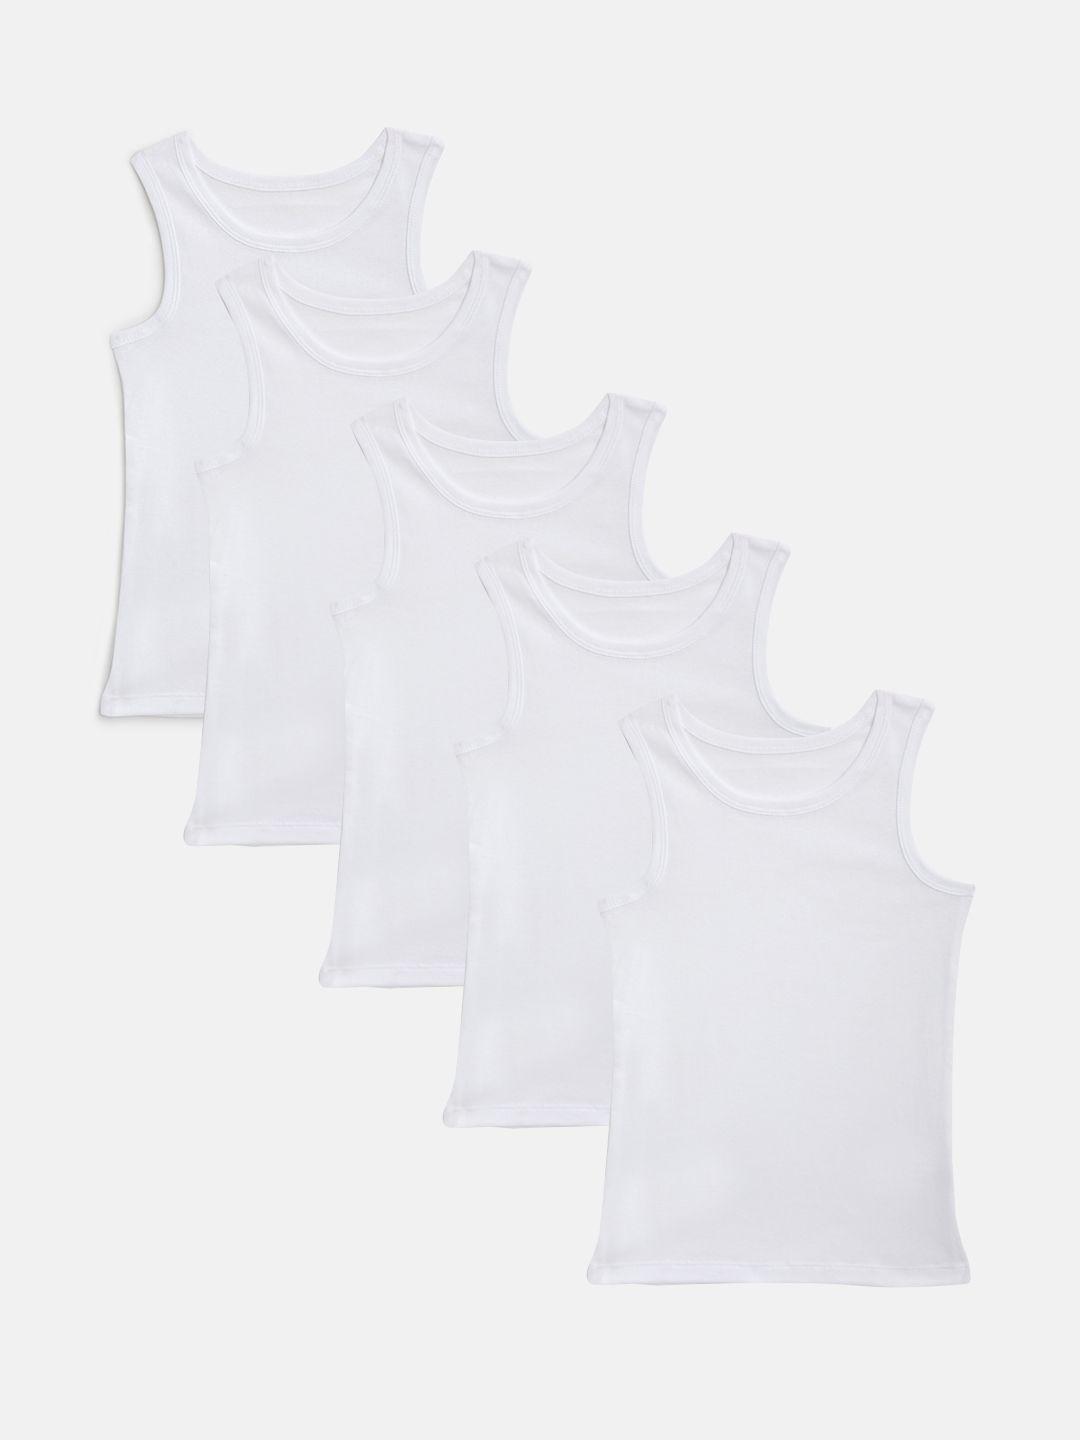 marks-&-spencer-boys-pack-of-5-white-solid-innerwear-vests-t711406v